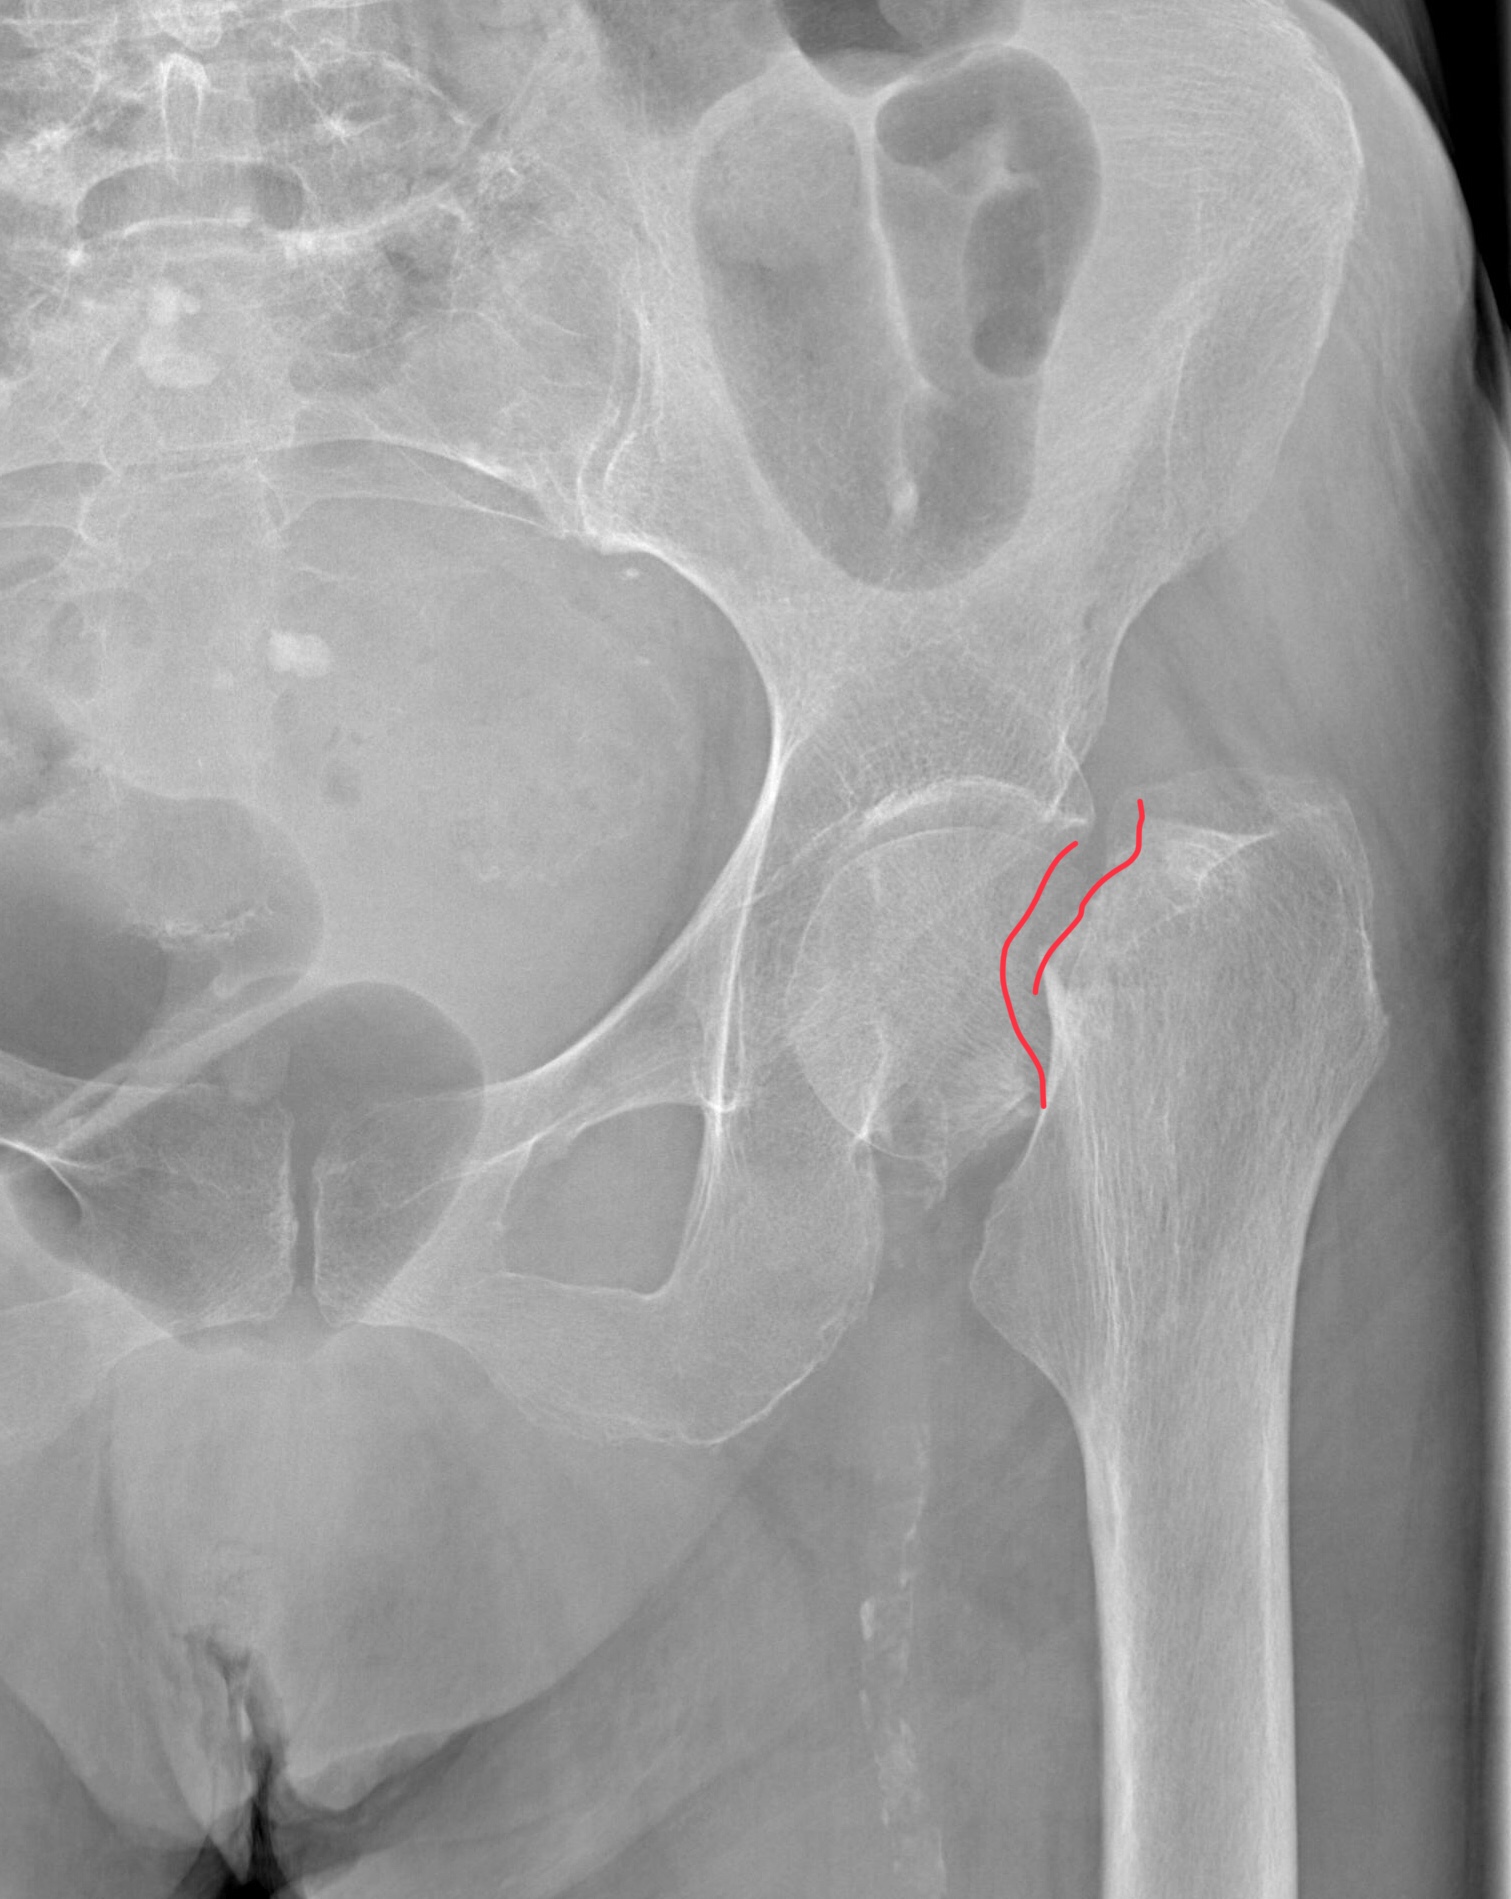 Сломана шейка бедра операция. Вколоченный перелом шейки бедра рентген. Перелом шейки бедра рентгенограмма. Перелом шейки бедренной кости рентген. Рентген тазобедренного сустава перелом шейки бедра.